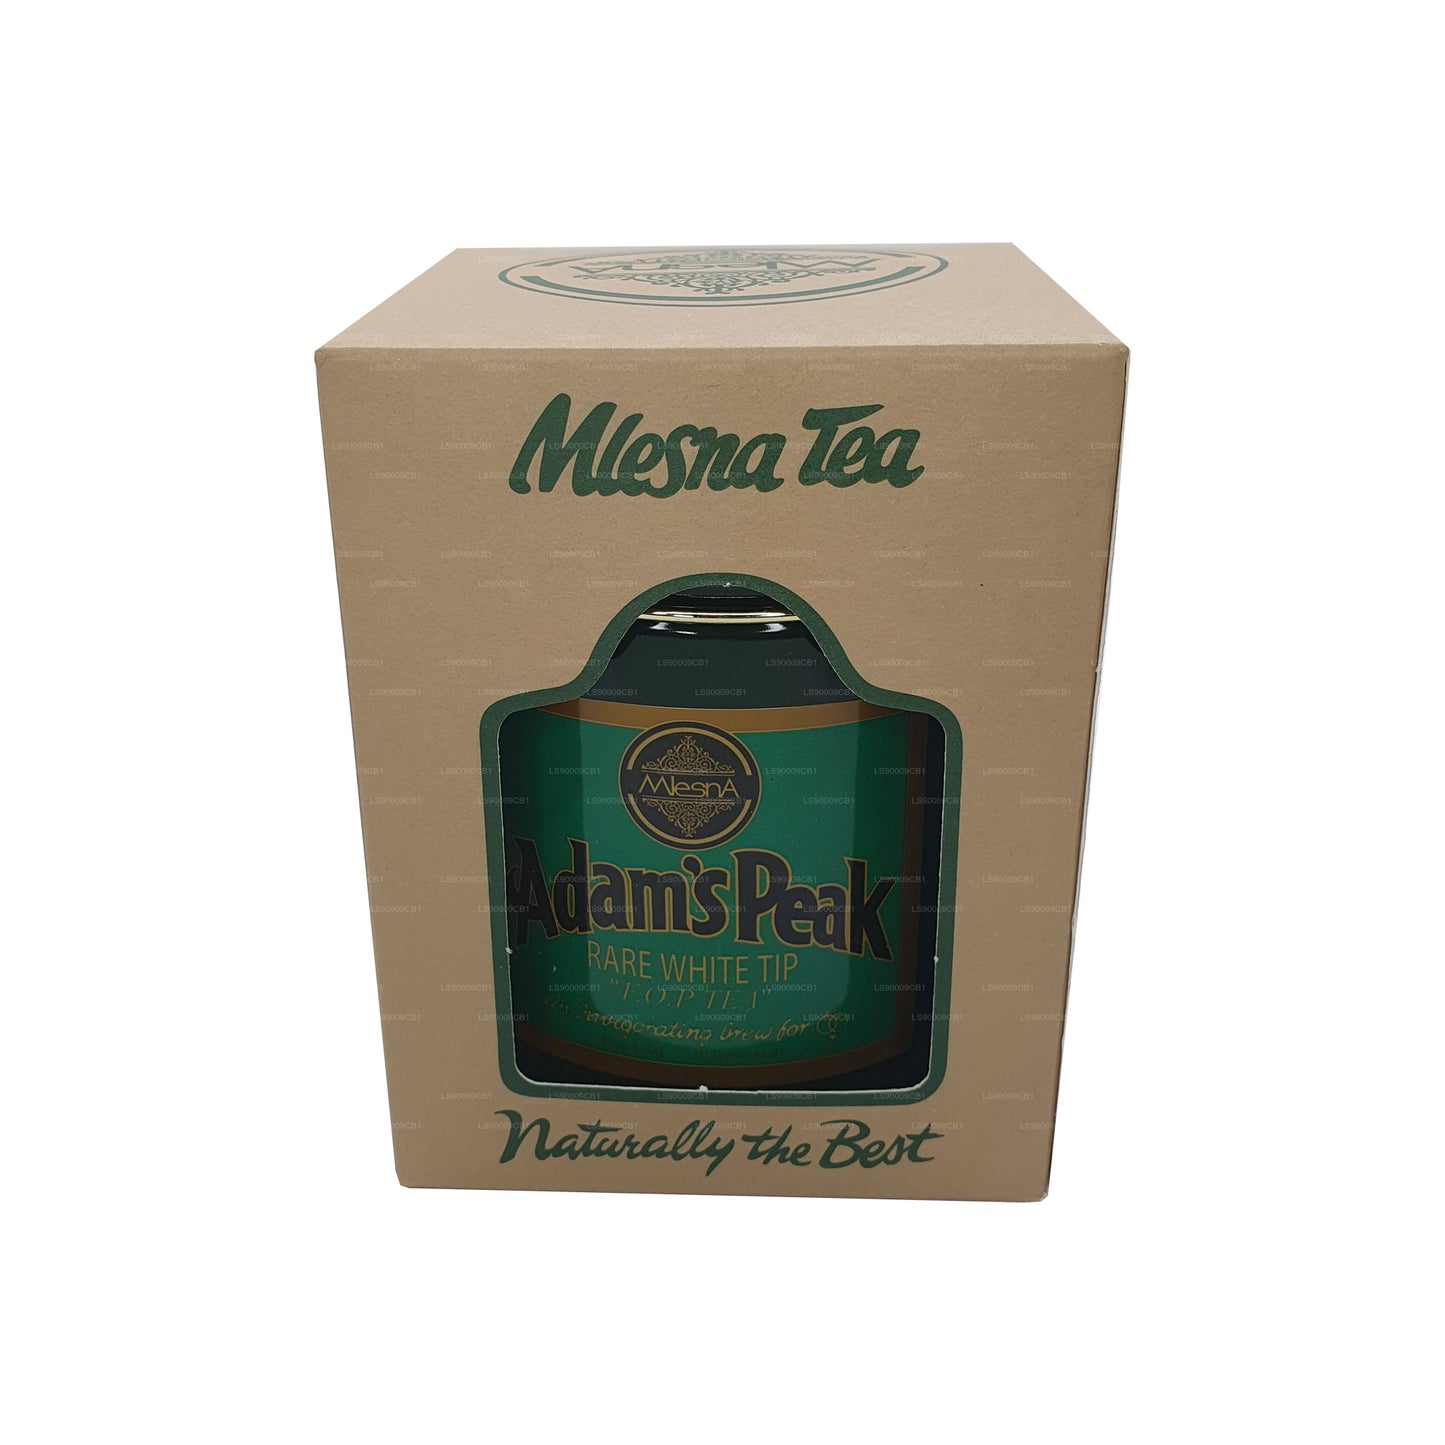 Mlesna Tea Adam's Peak Rzadka Biała końcówka FOP Herbata liściasta w metalowym pojemku (100g)